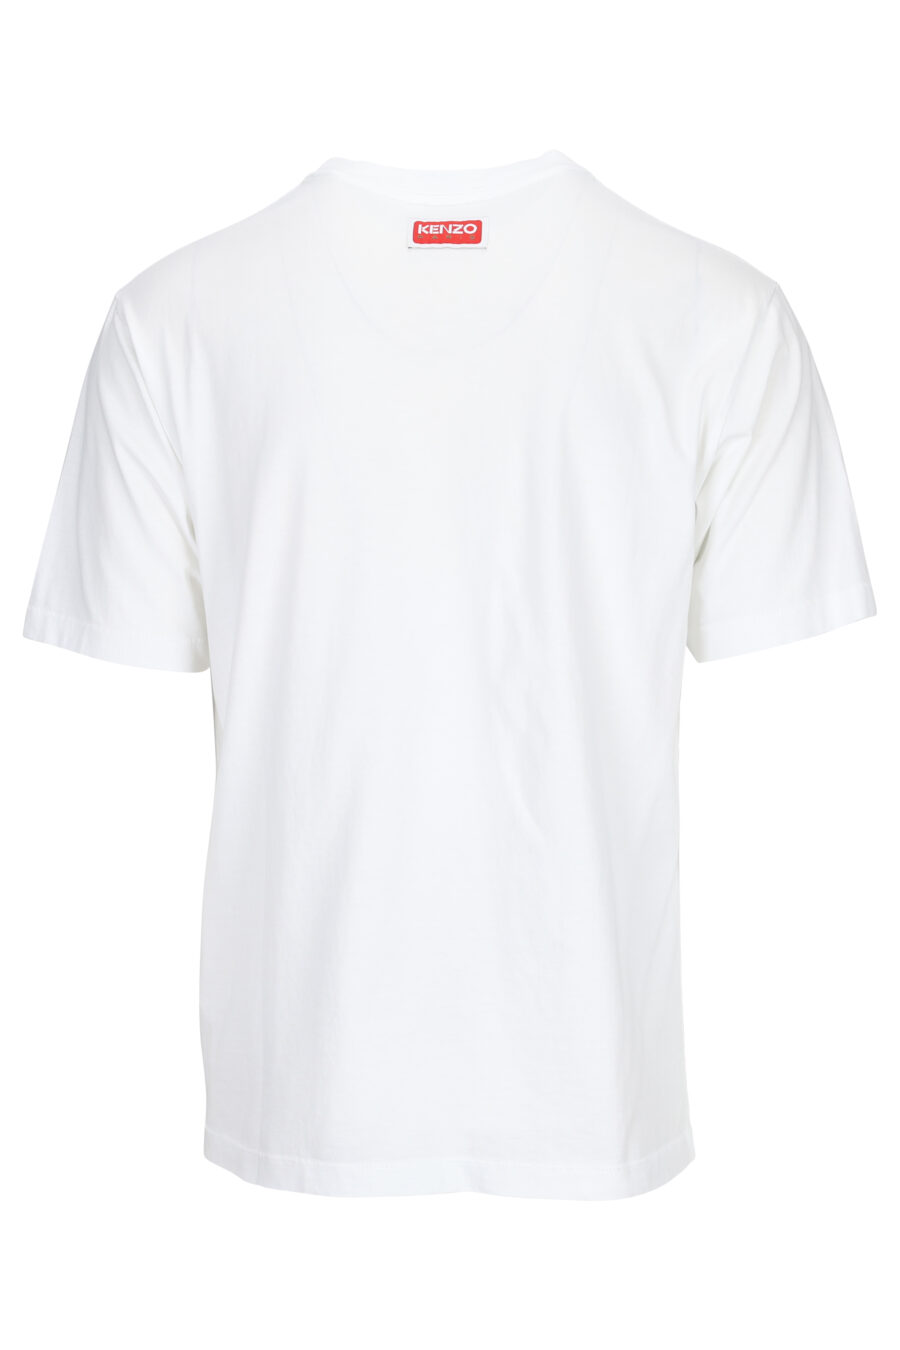 Camiseta blanca con minilogo elefante - 3612230553590 1